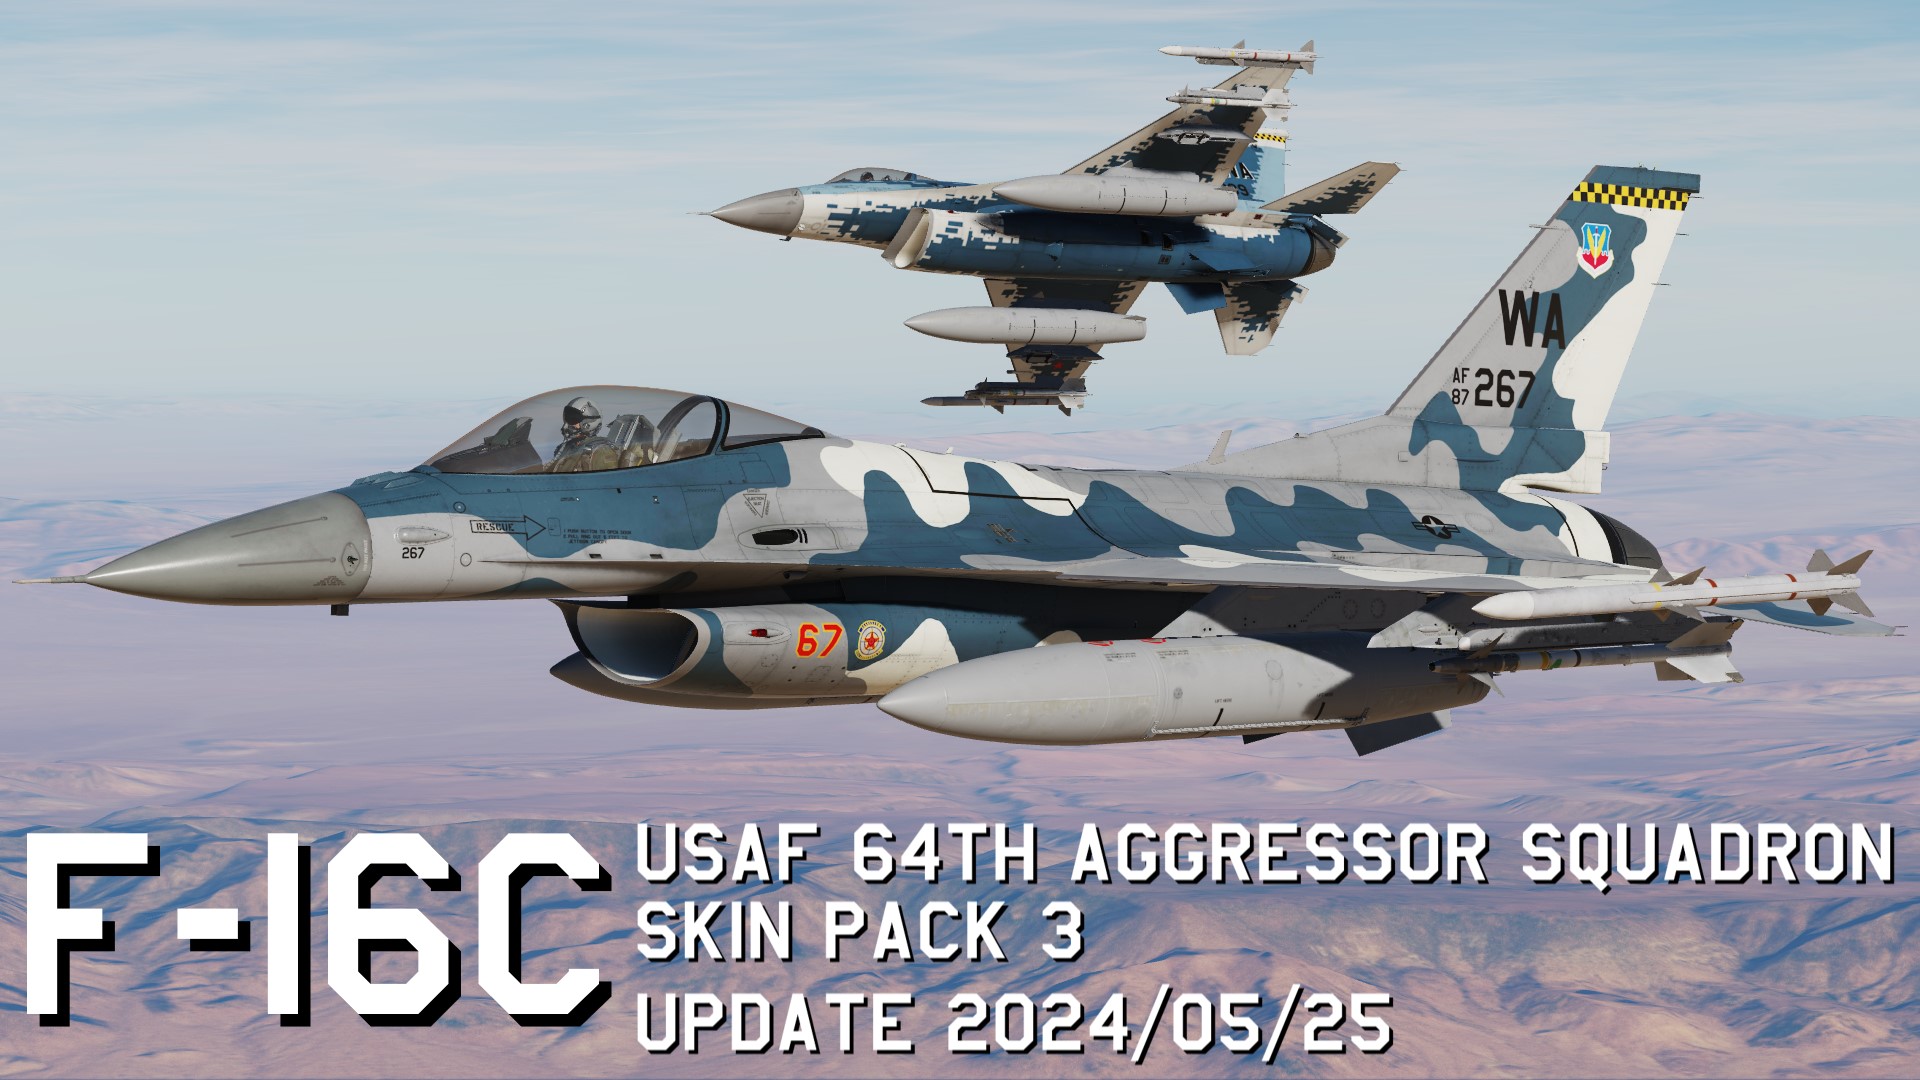 F-16C USAF 64th Aggressor Squadron Skin Pack 3 update 2024/05/25